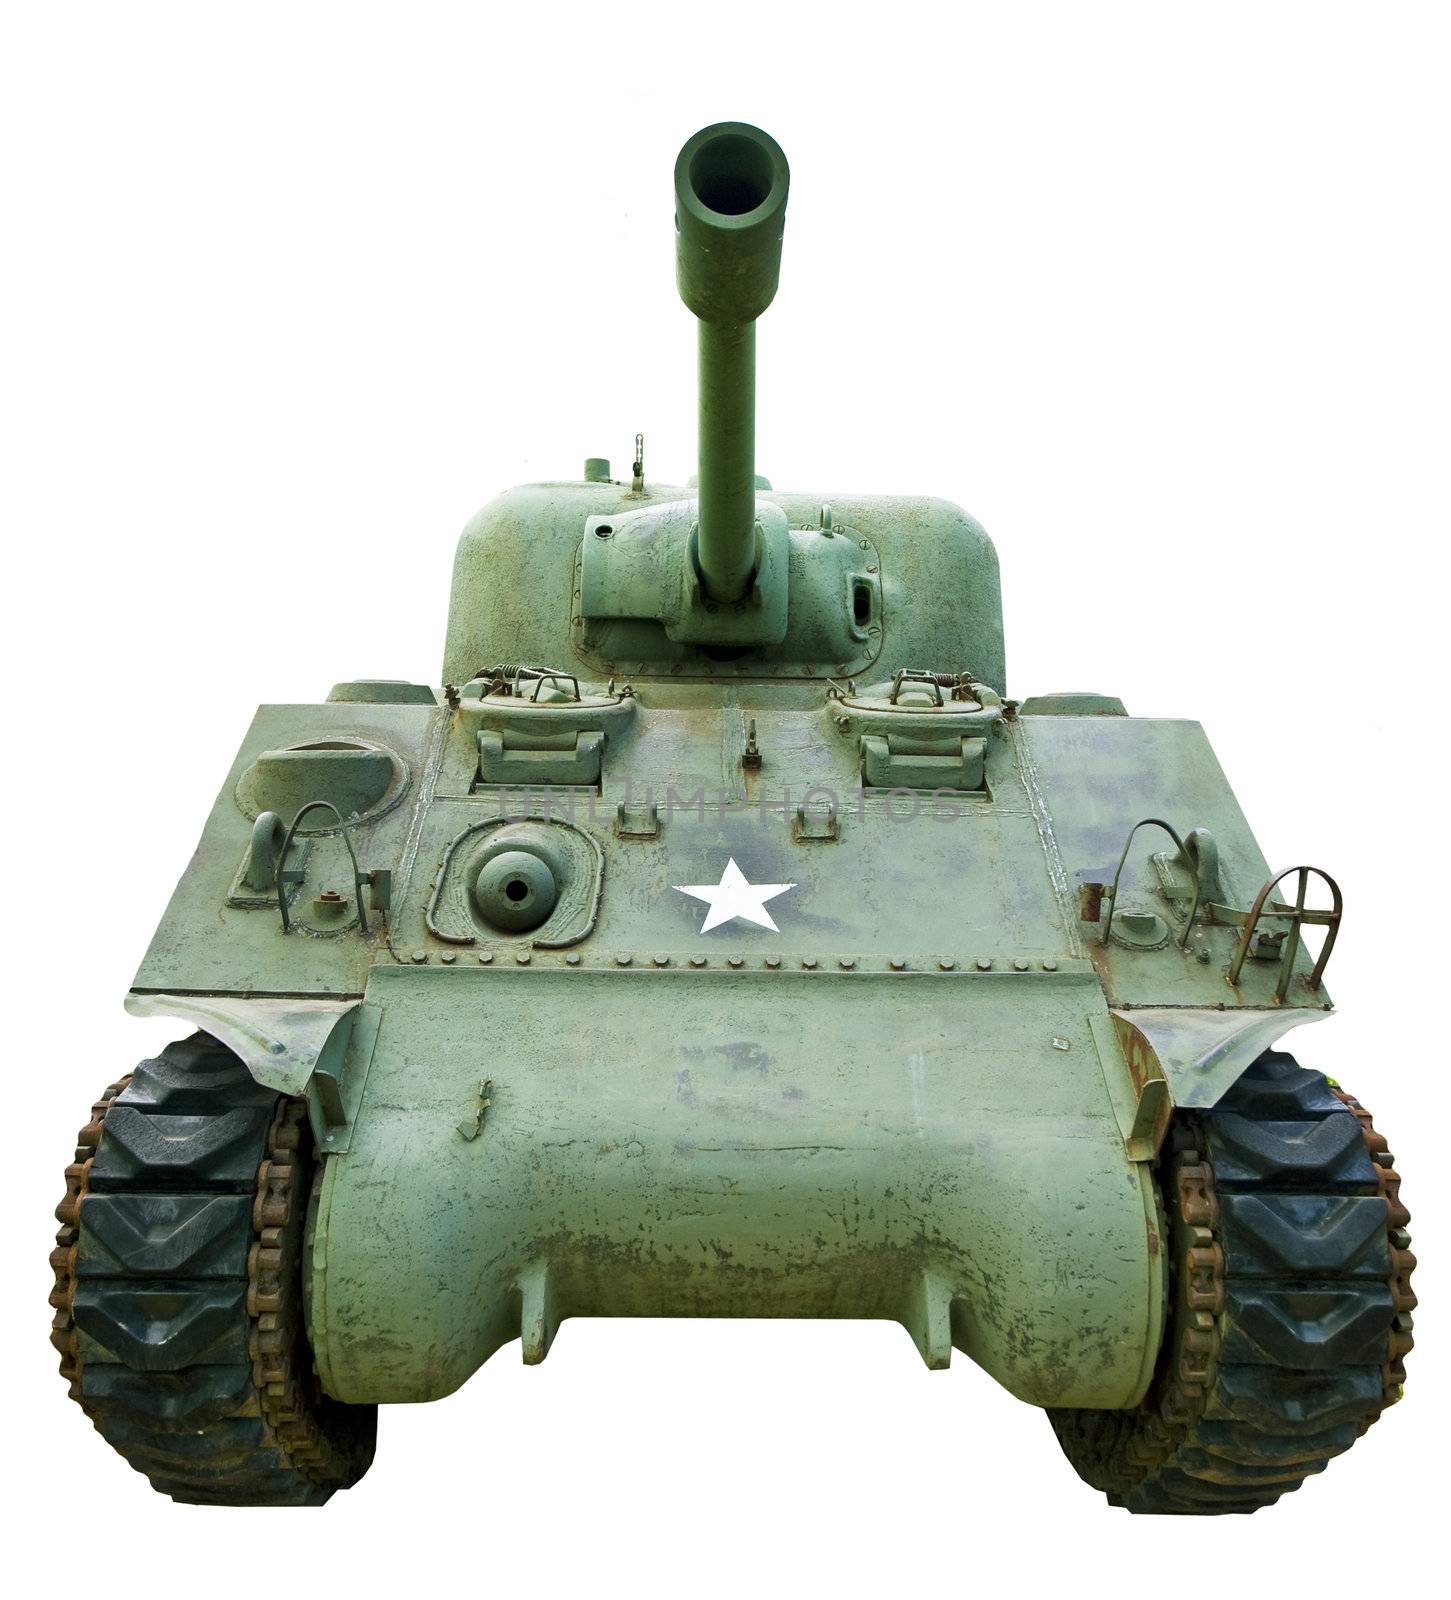 WWII Tank by thyrymn